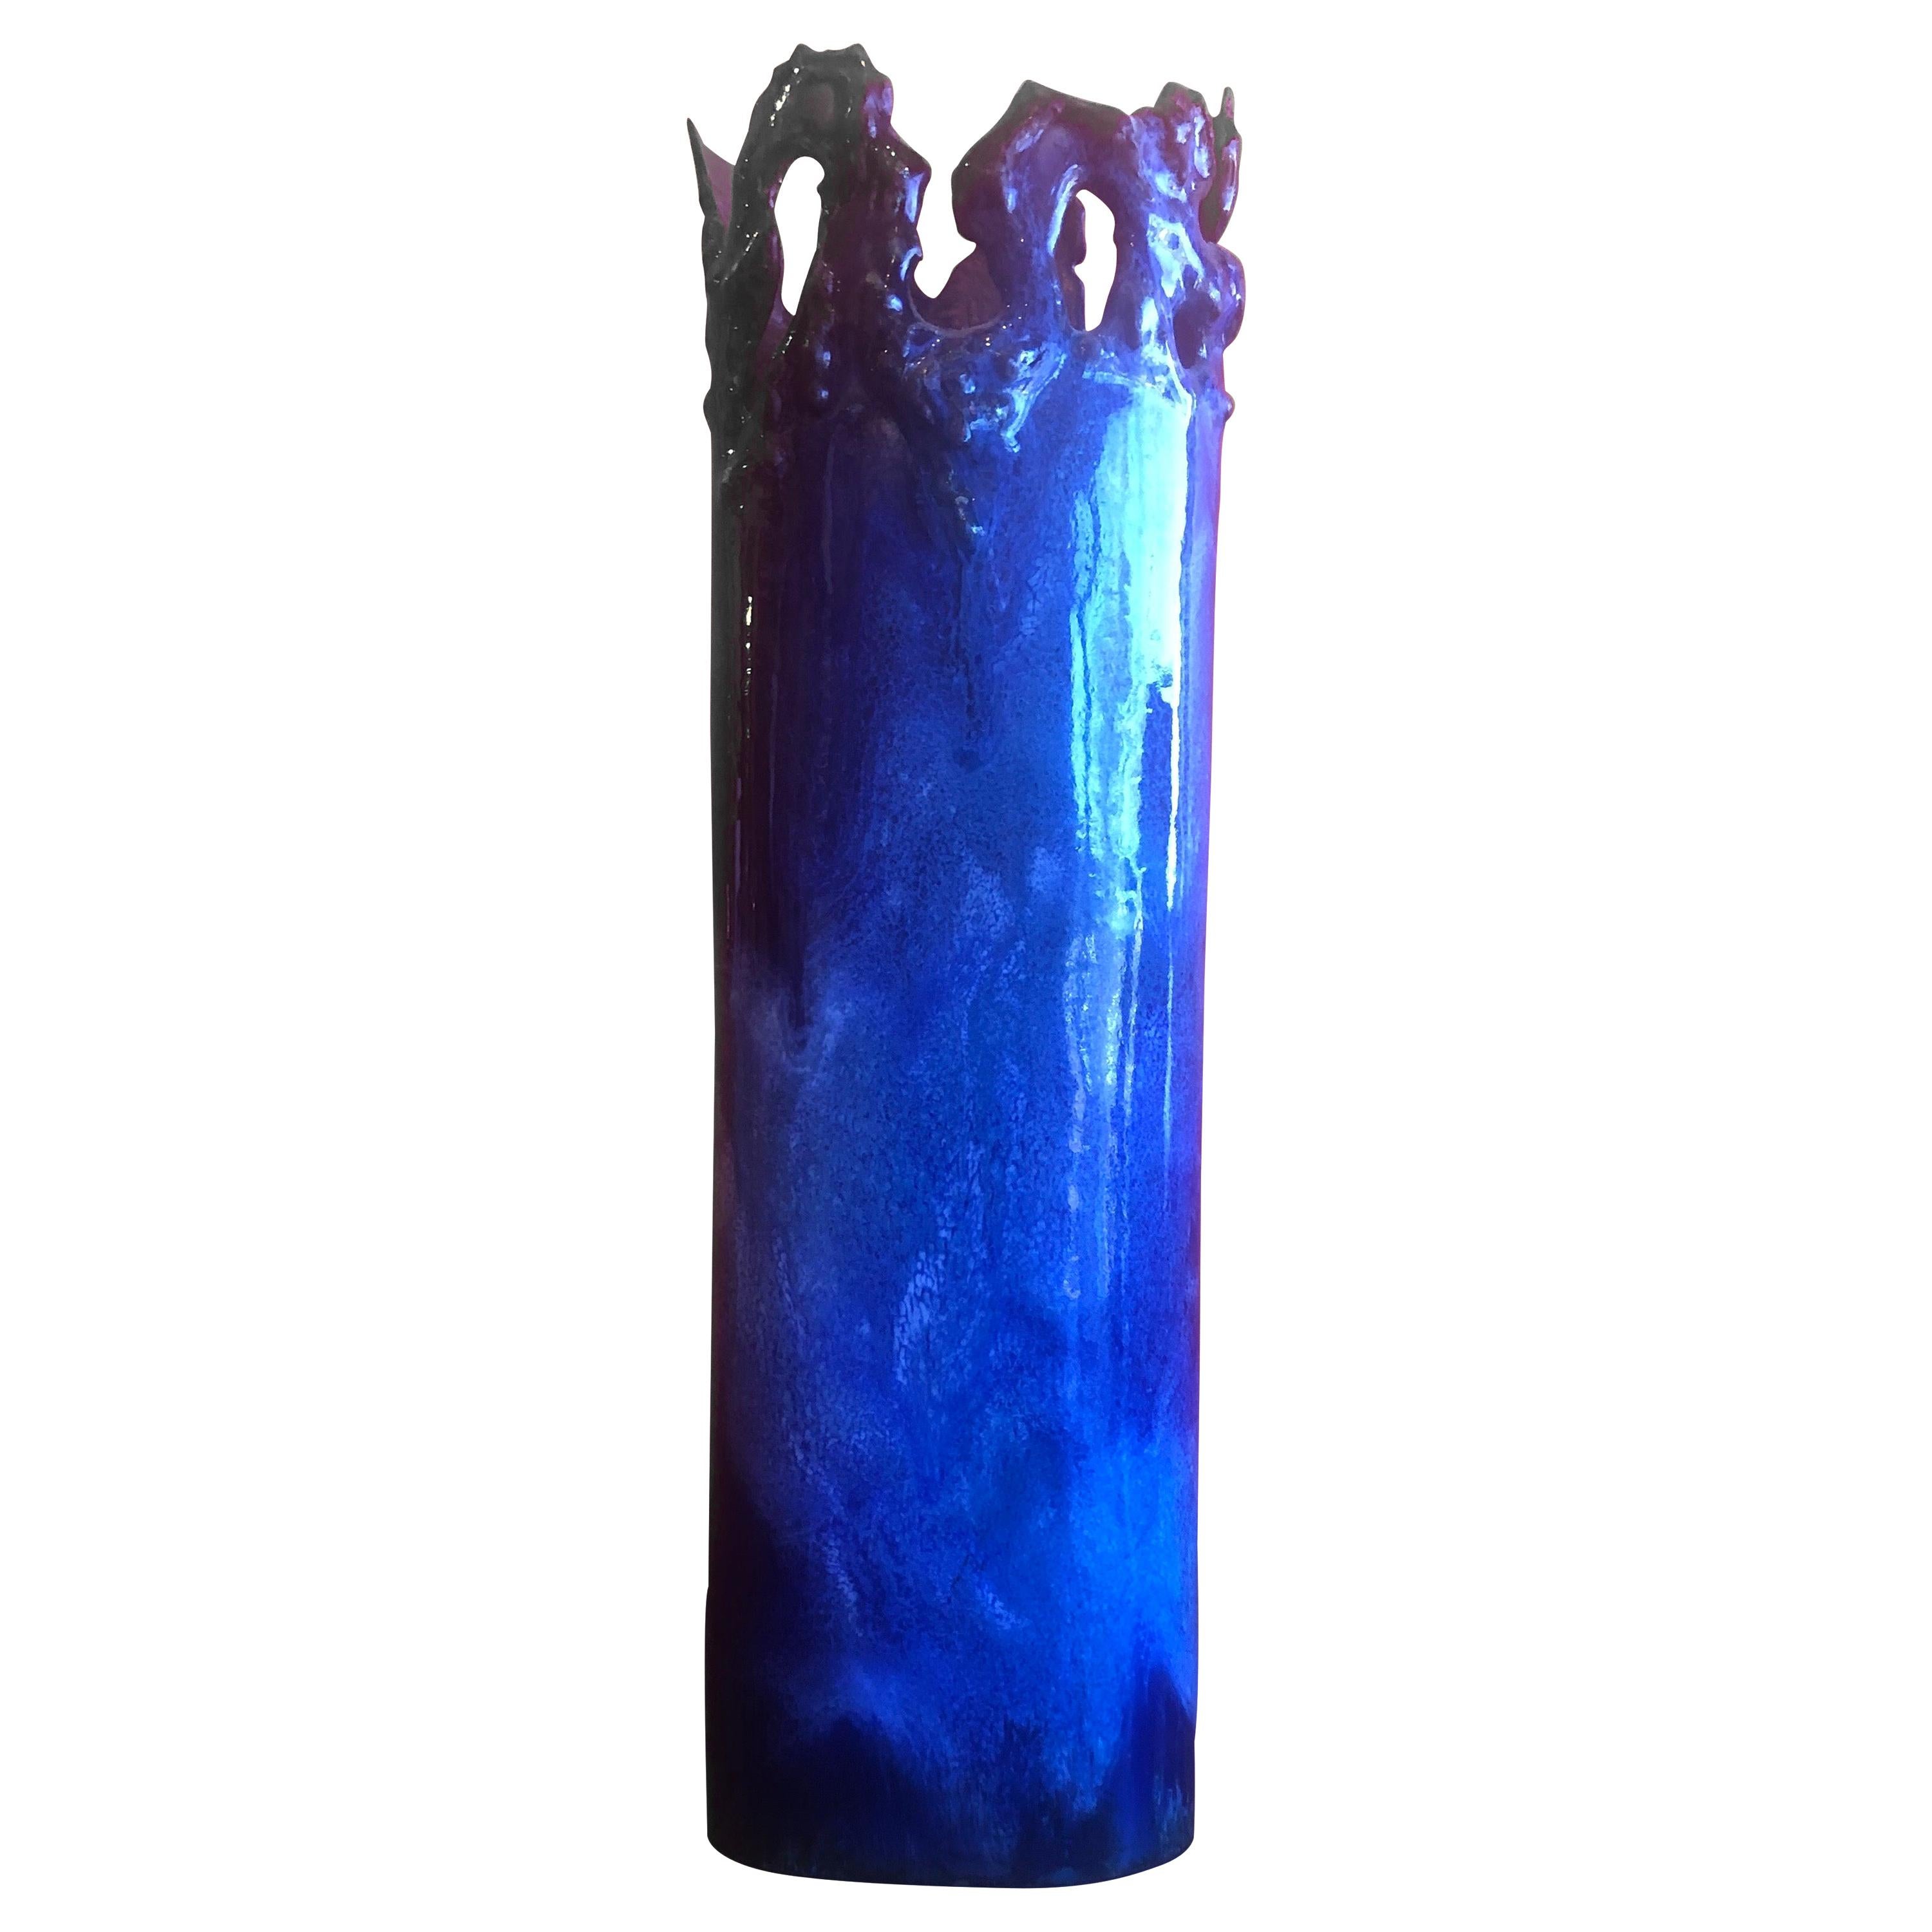 Brutalist Copper Vase with Dark Blue Enamel Overlays by Rita Brierton